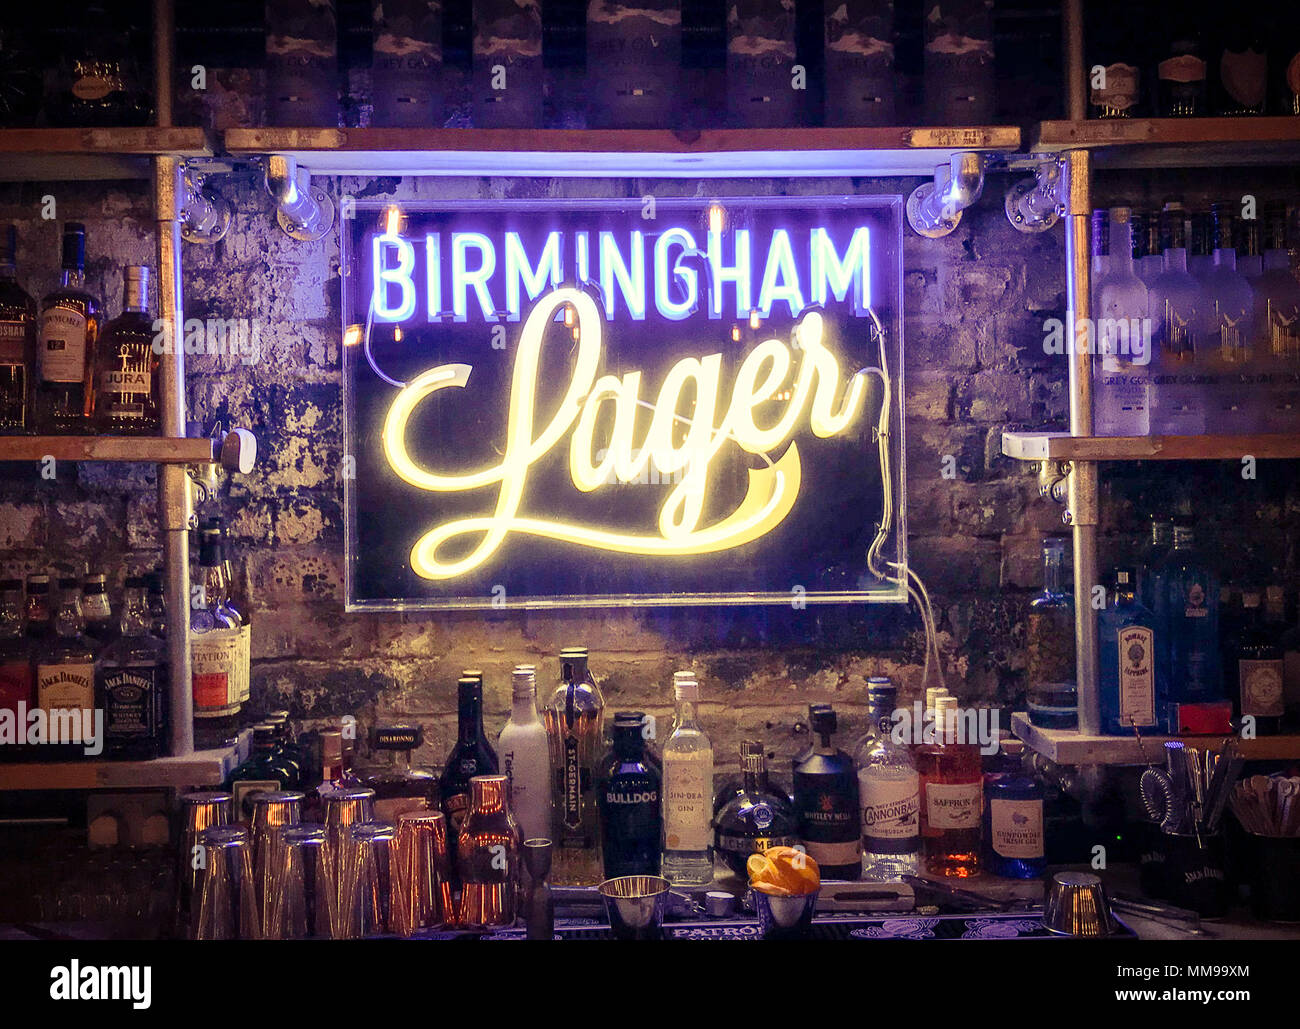 Birmingham Lager segno, dalla birreria indiano, Snow Hill, Birmingham B3 1UE, England, Regno Unito Foto Stock